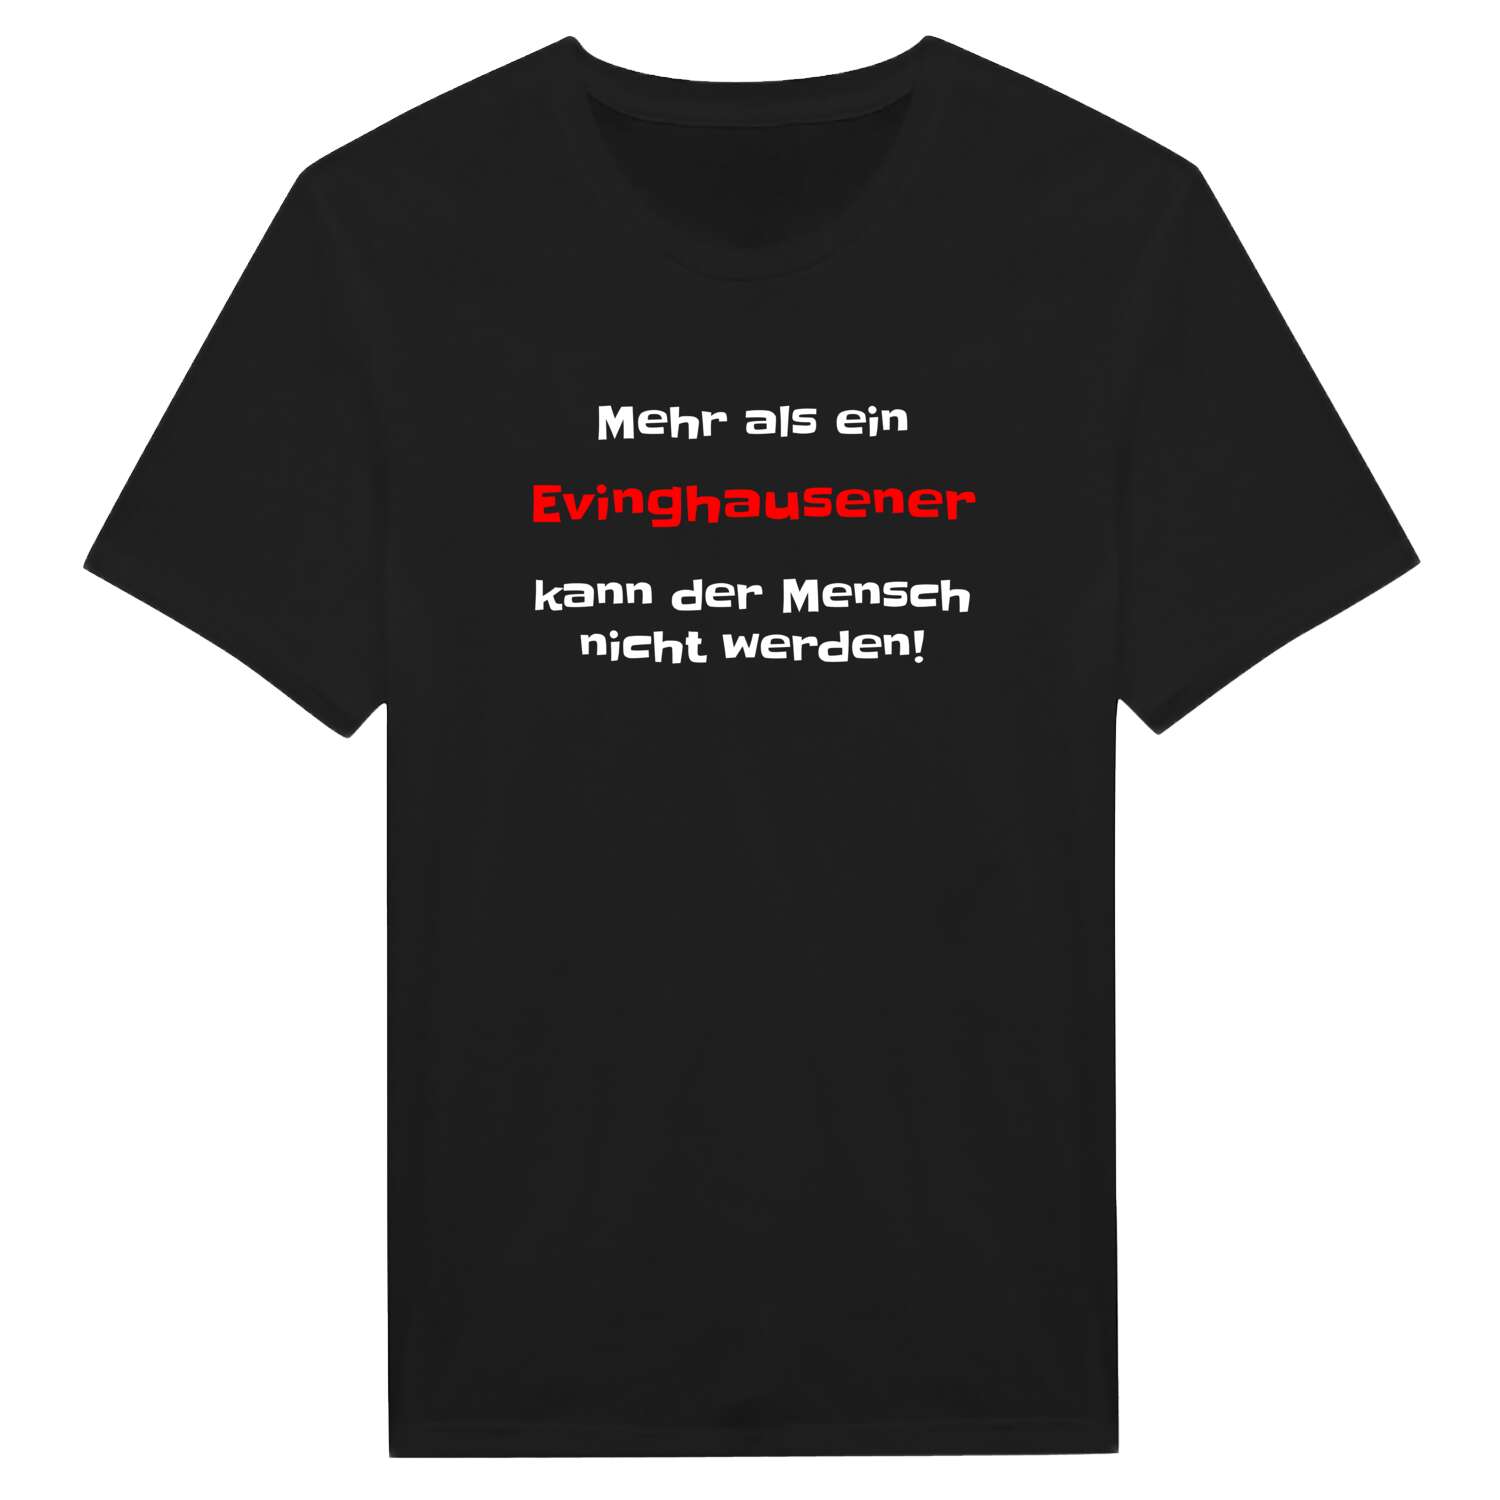 Evinghausen T-Shirt »Mehr als ein«